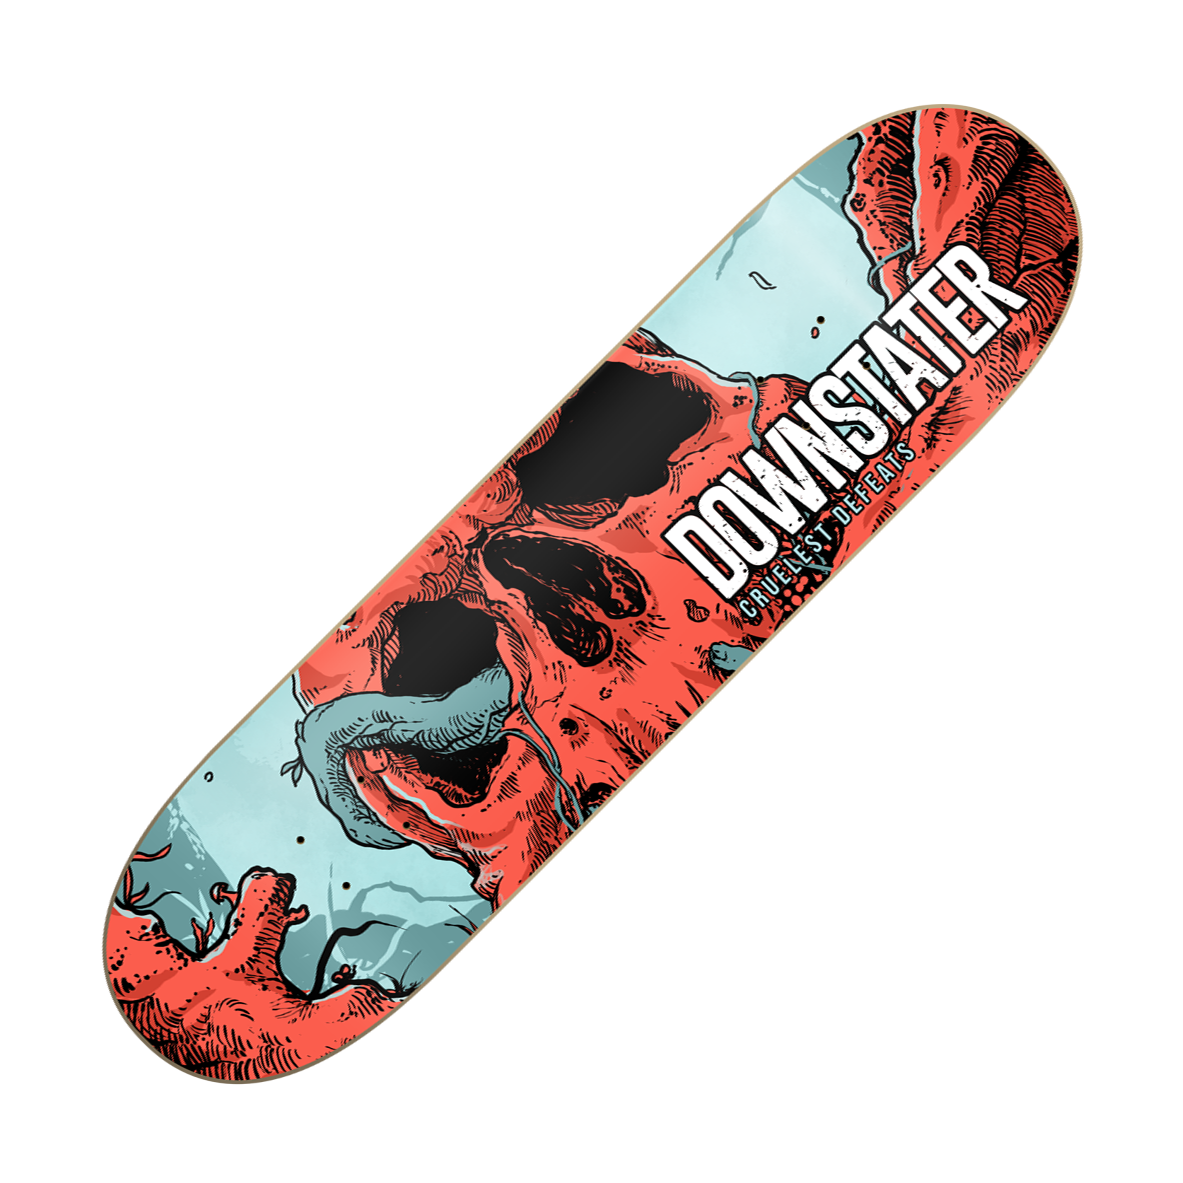 DOWNSTATER - "Cruelest Defeats" (Skateboard Deck)